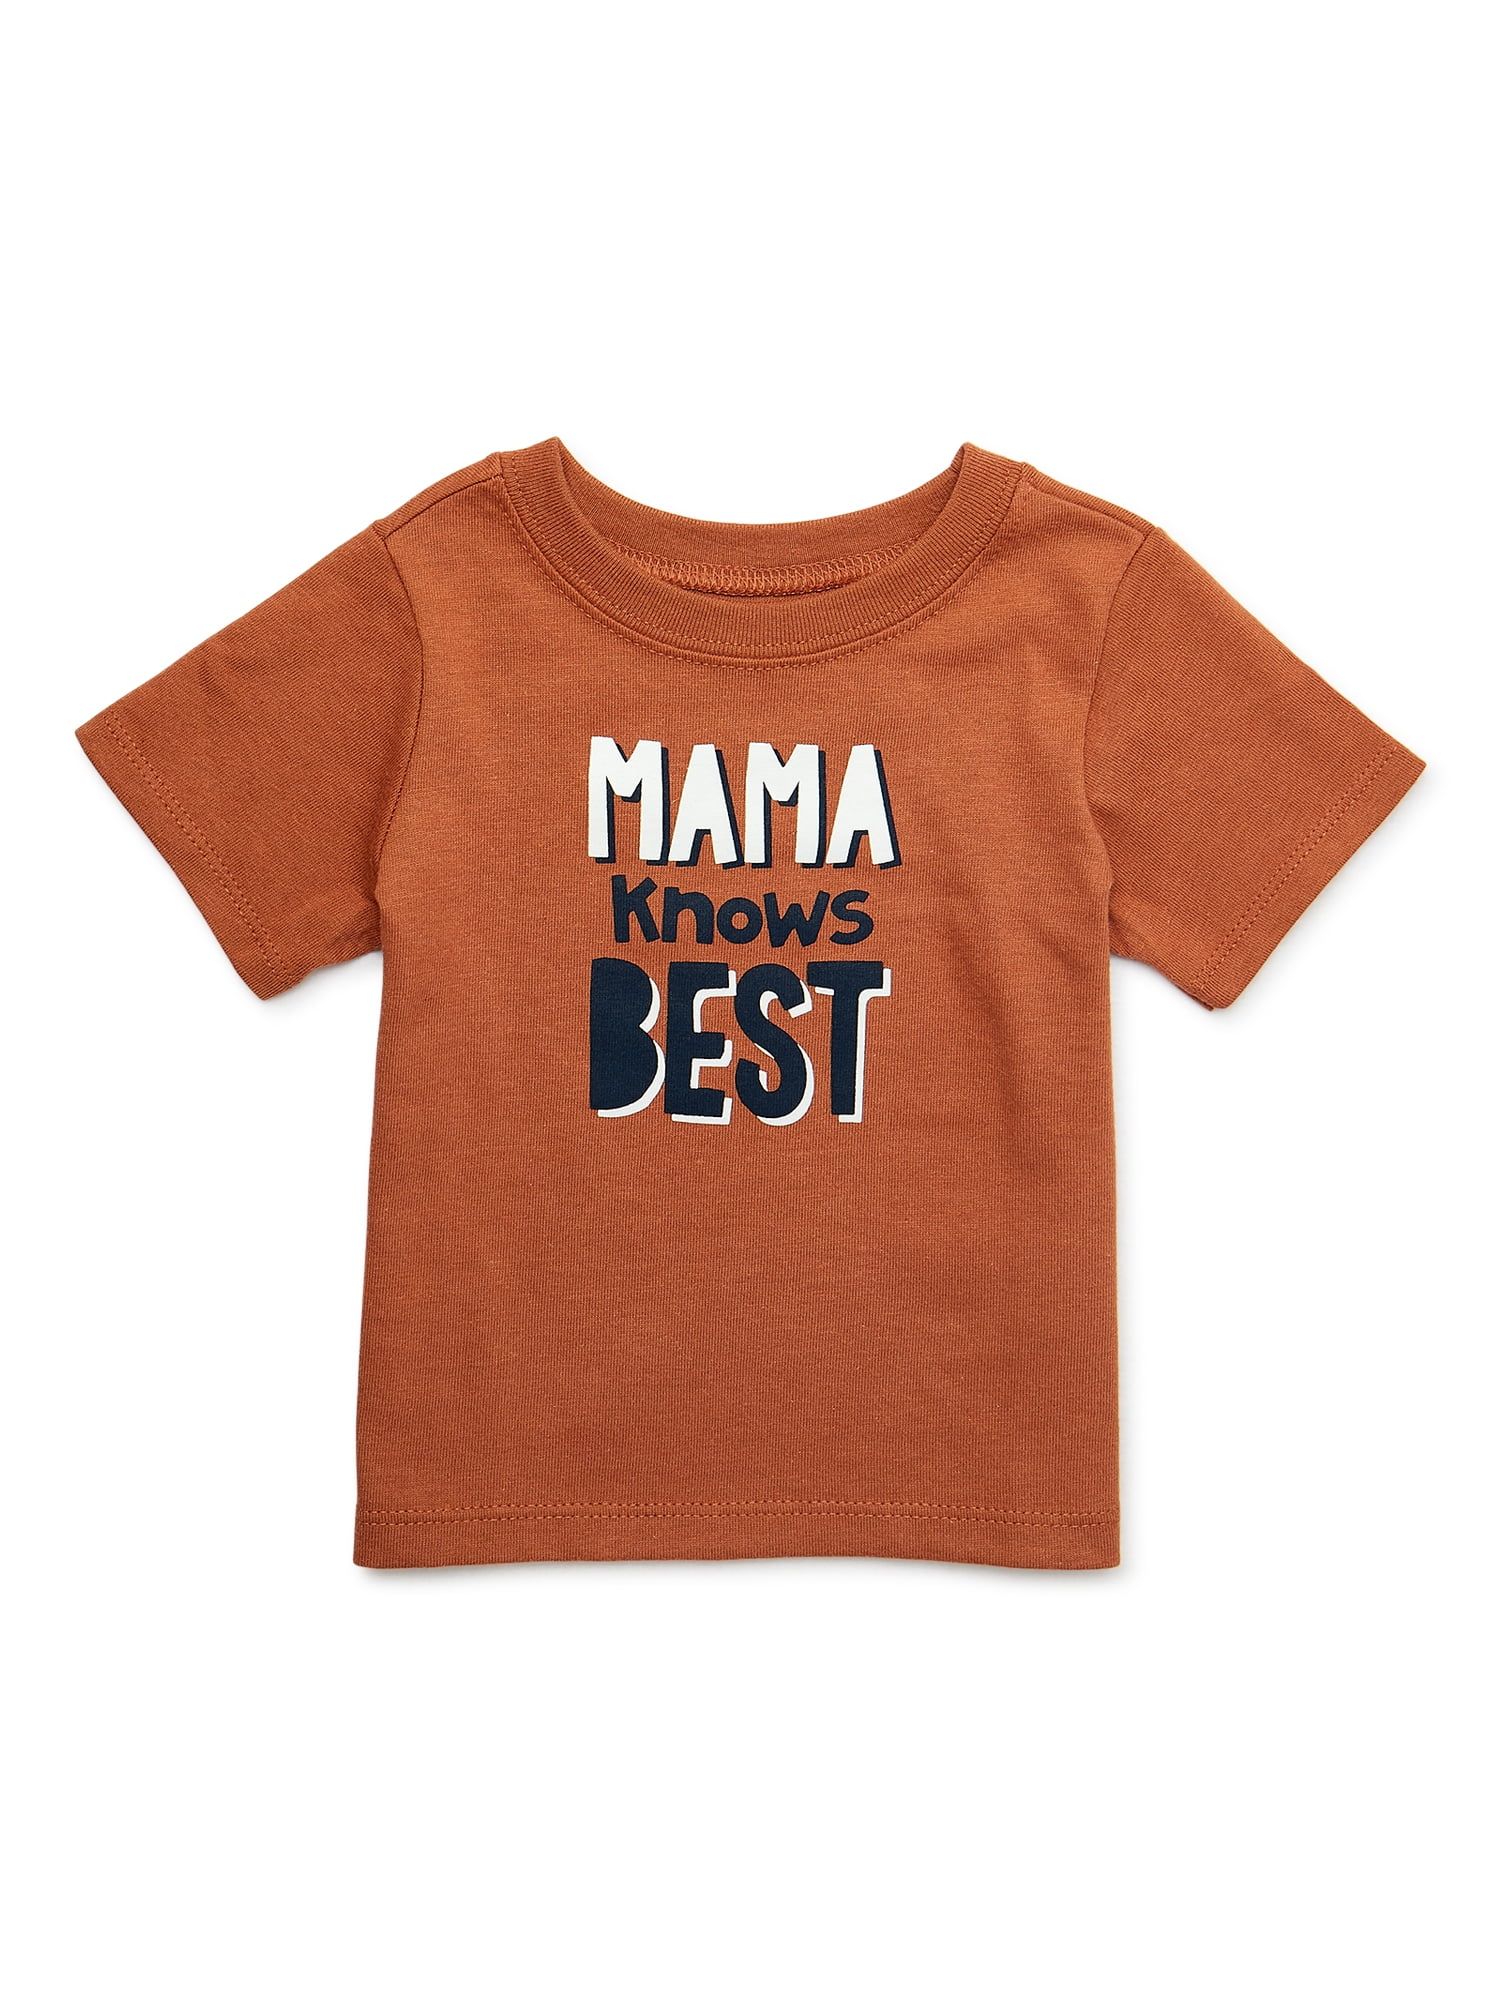 Garanimals Baby Boy Short Sleeve Graphic T-Shirt, Sizes 0-24 Months - Walmart.com | Walmart (US)